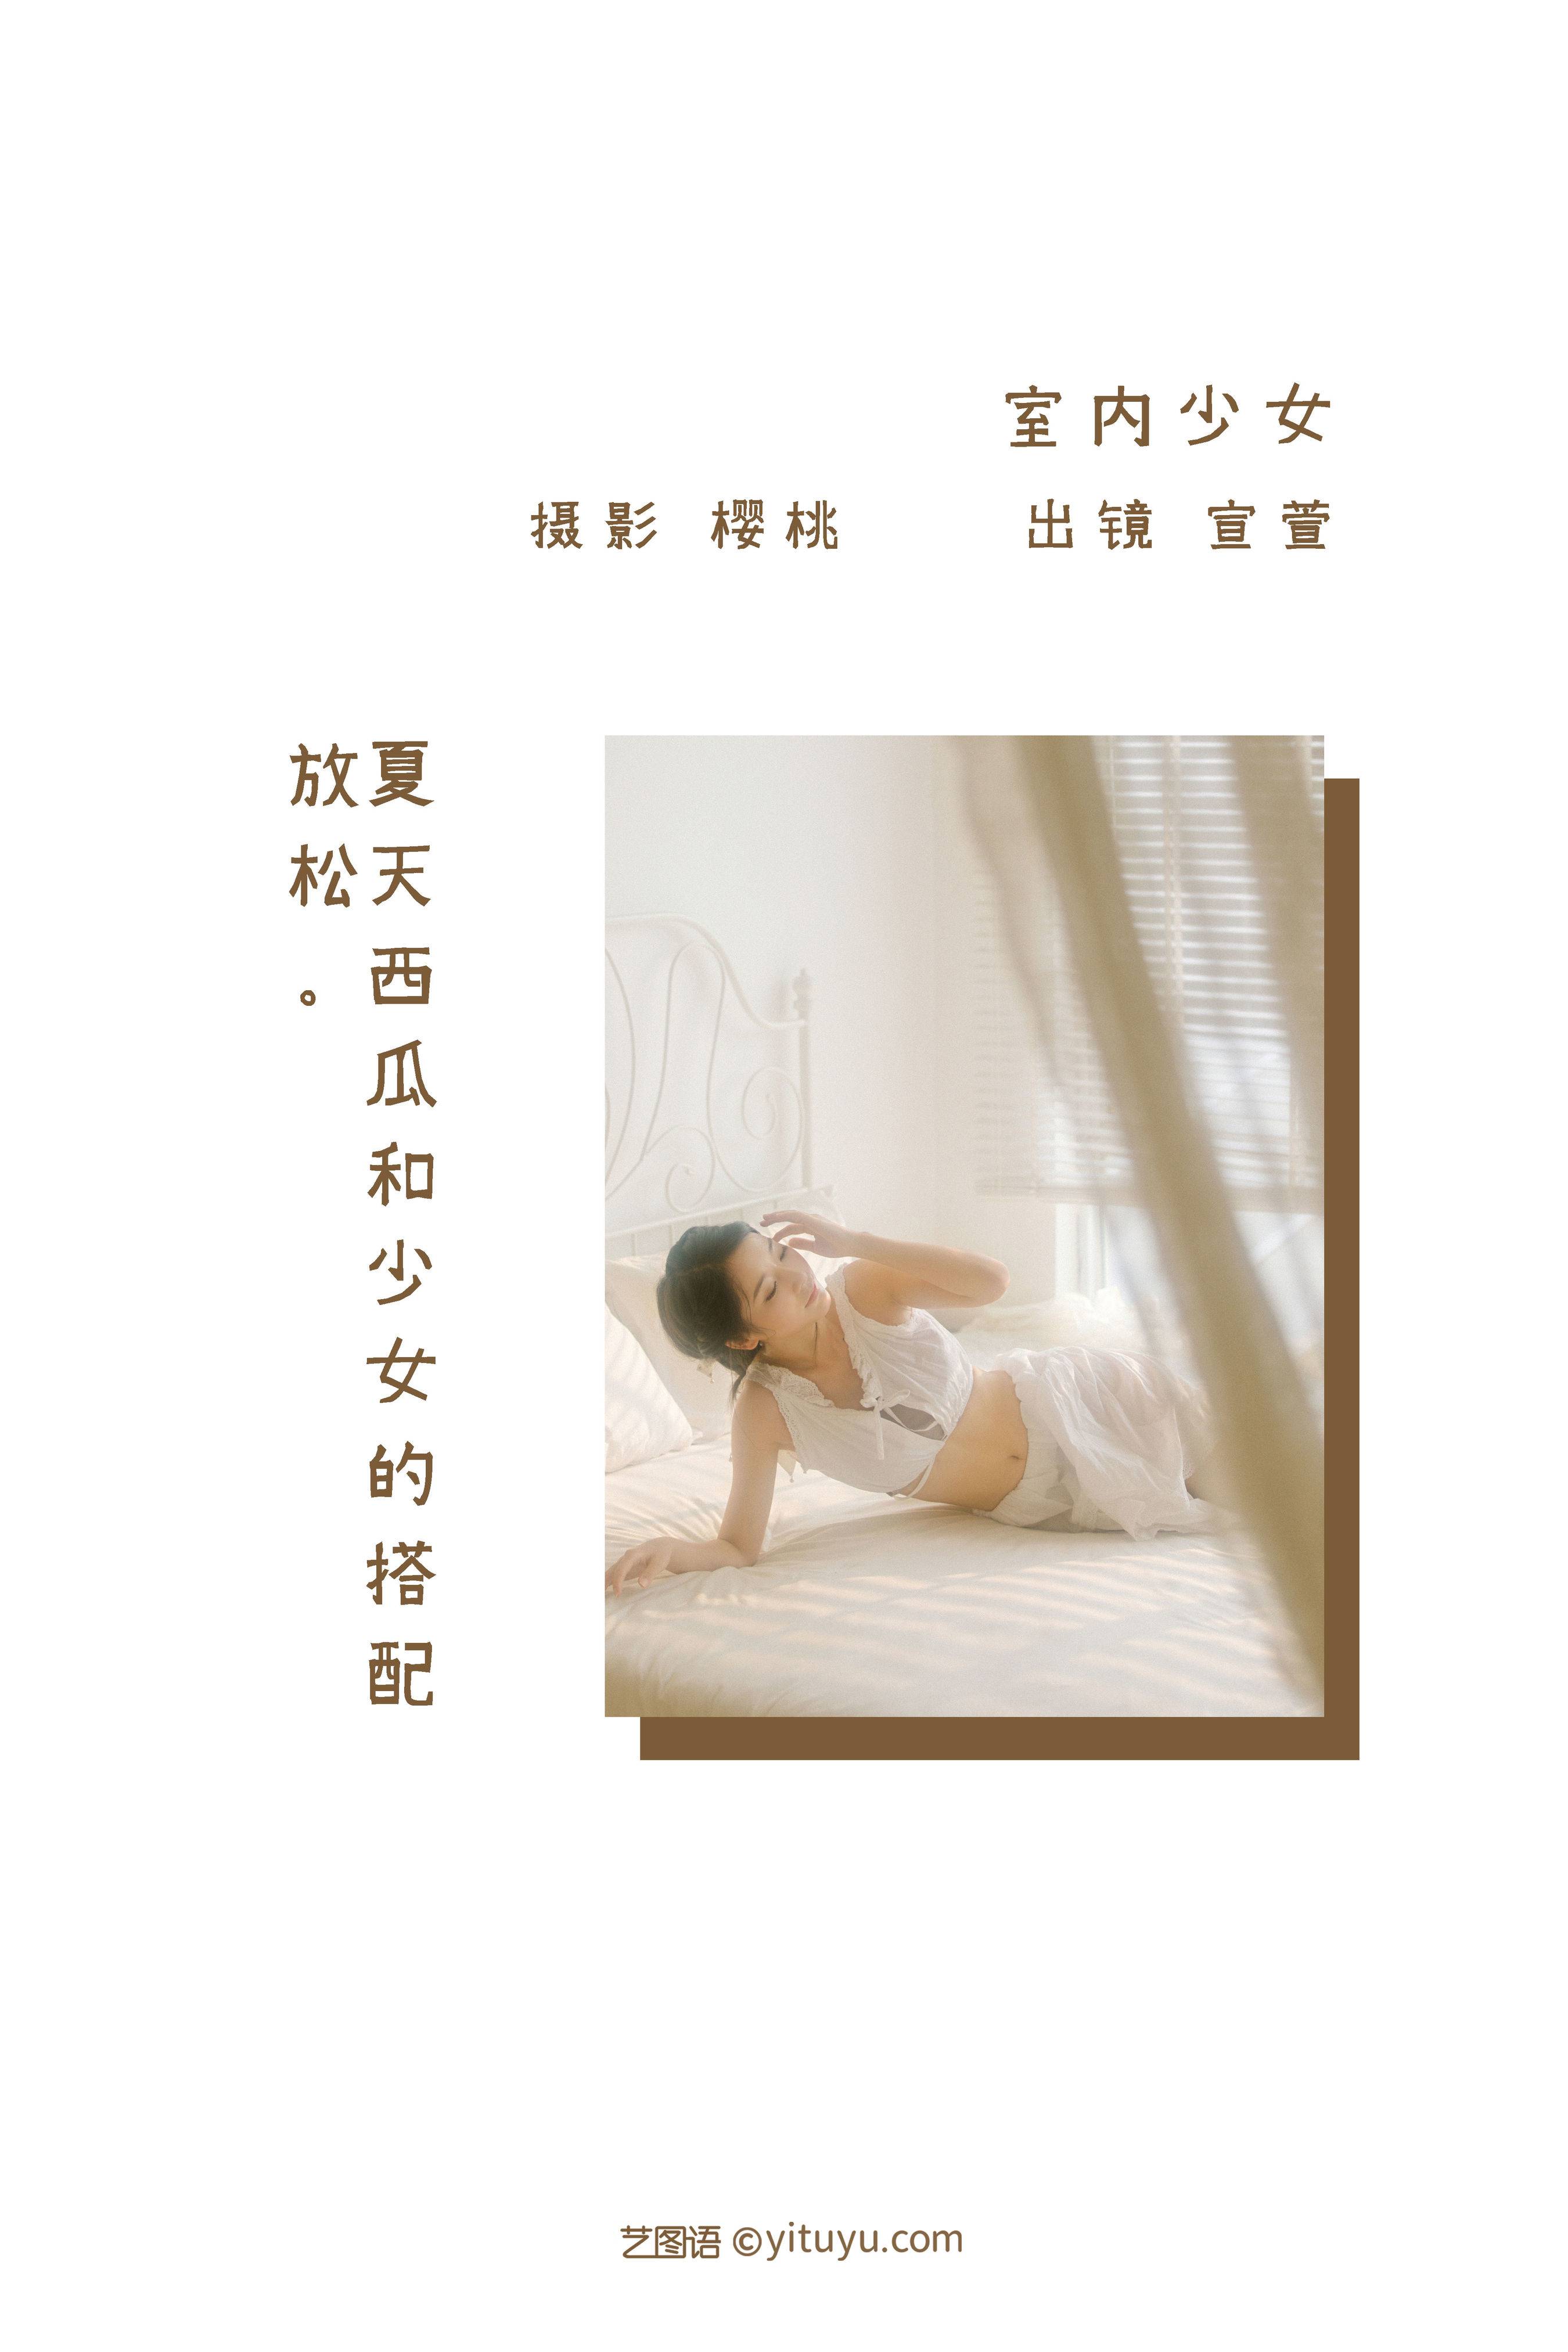 室内少女 日系 写真集 少女&YiTuYu艺图语-2